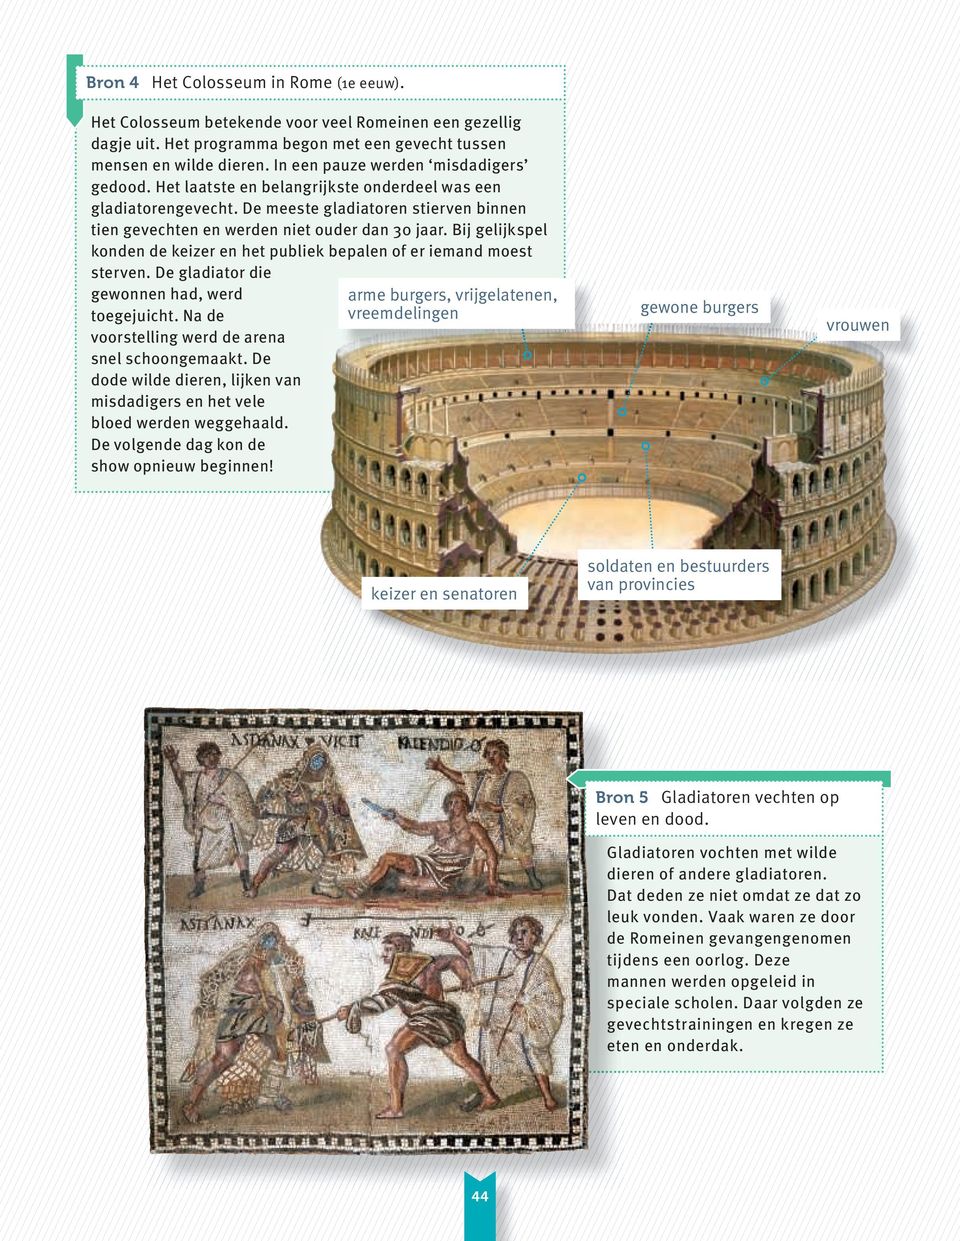 Bij gelijkspel konden de keizer en het publiek bepalen of er iemand moest sterven. De gladiator die gewonnen had, werd toegejuicht. Na de voorstelling werd de arena snel schoongemaakt.